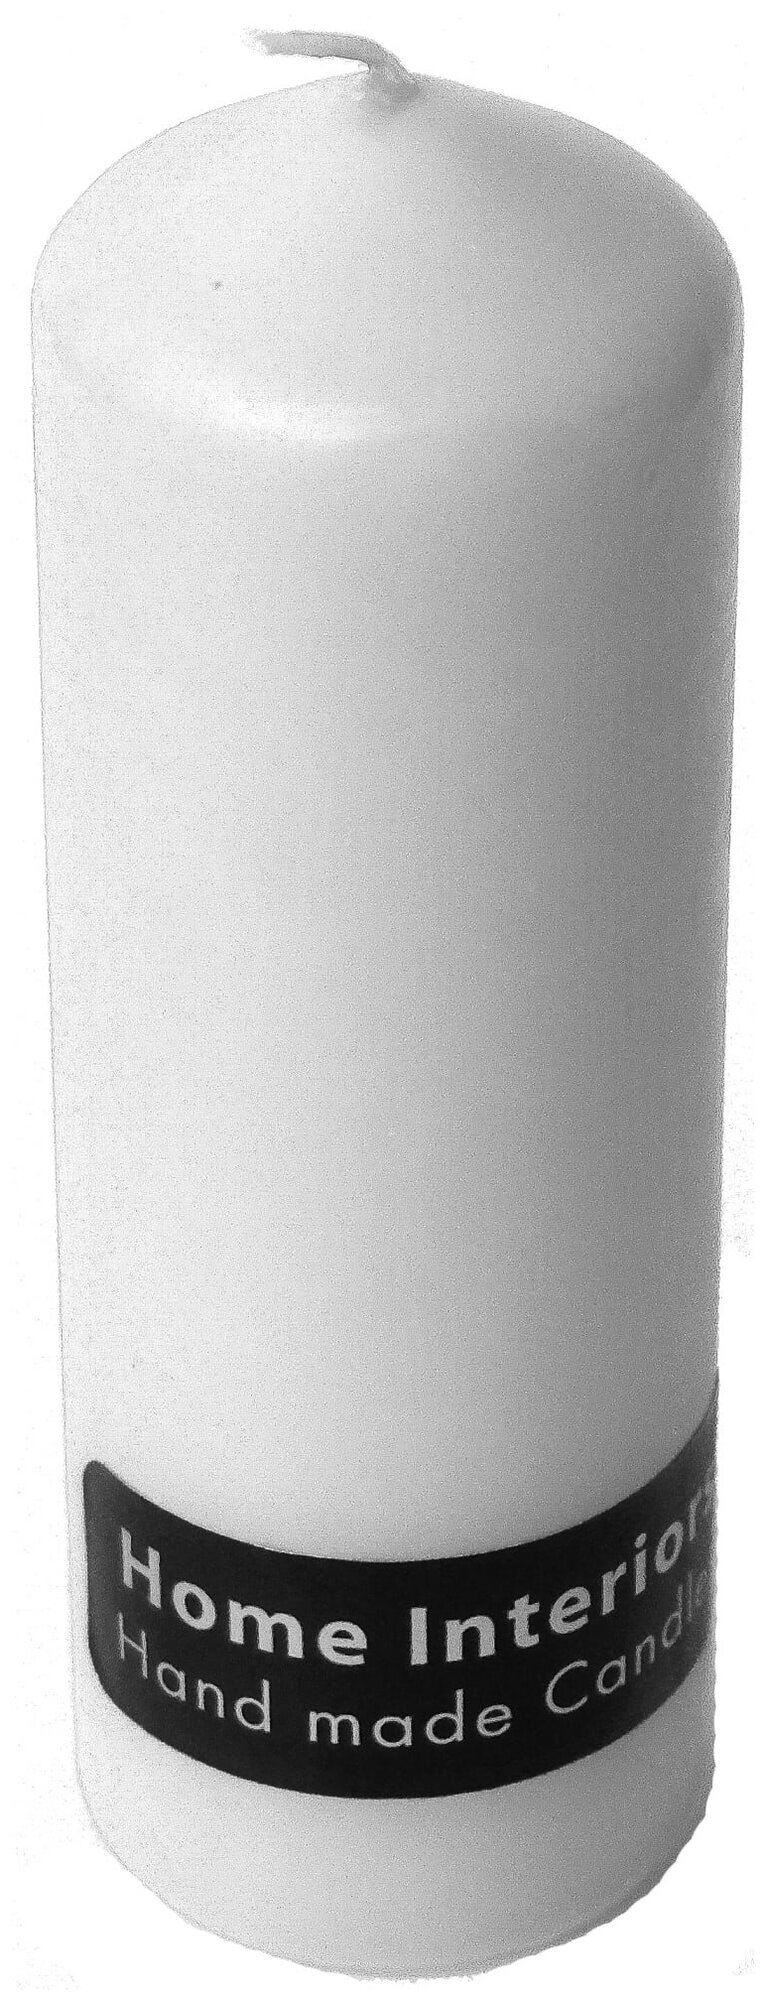 Свеча-столбик 60x170 мм цвет белый. Набор из 2 шт.